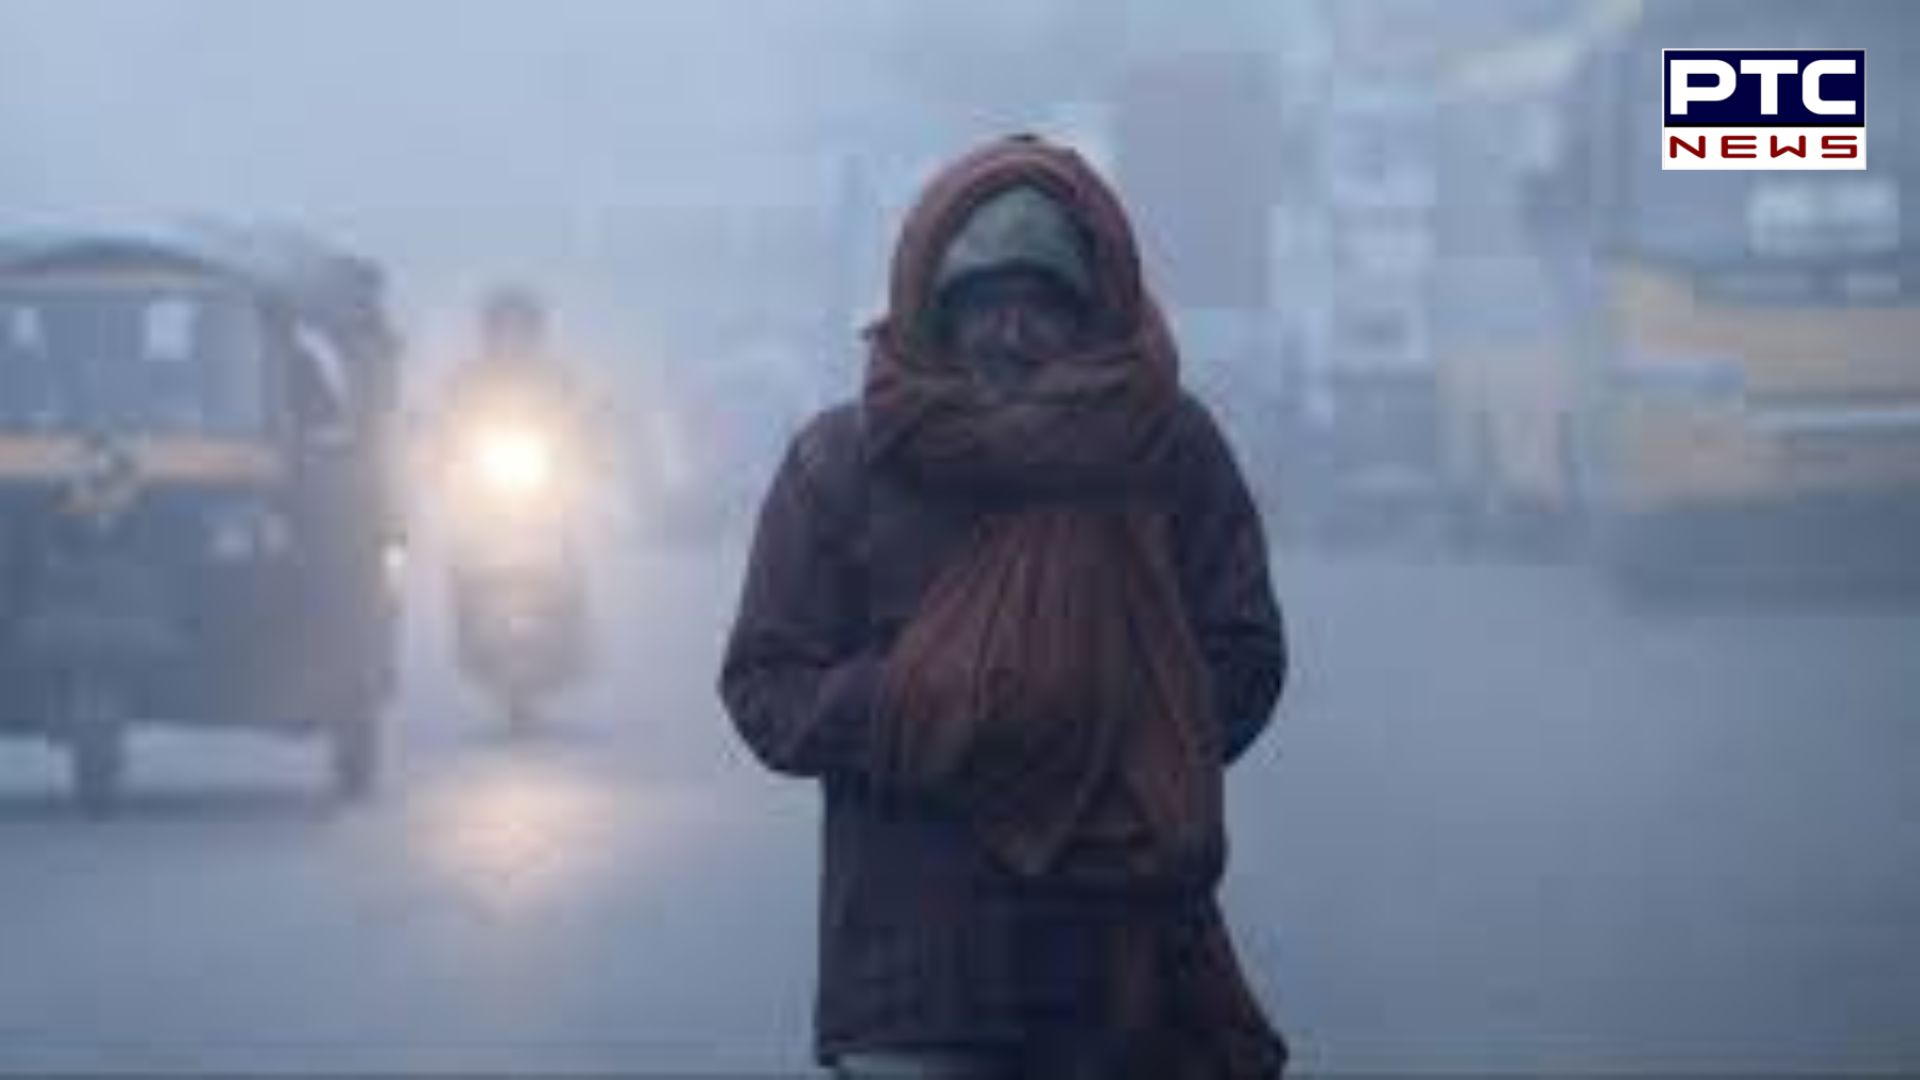 ठंड से कांप उठा उत्तर भारत: घने कोहरे, बर्फीली हवाओं से राहत नहीं, सामान्य जनजीवन हुआ अस्त-व्यस्त